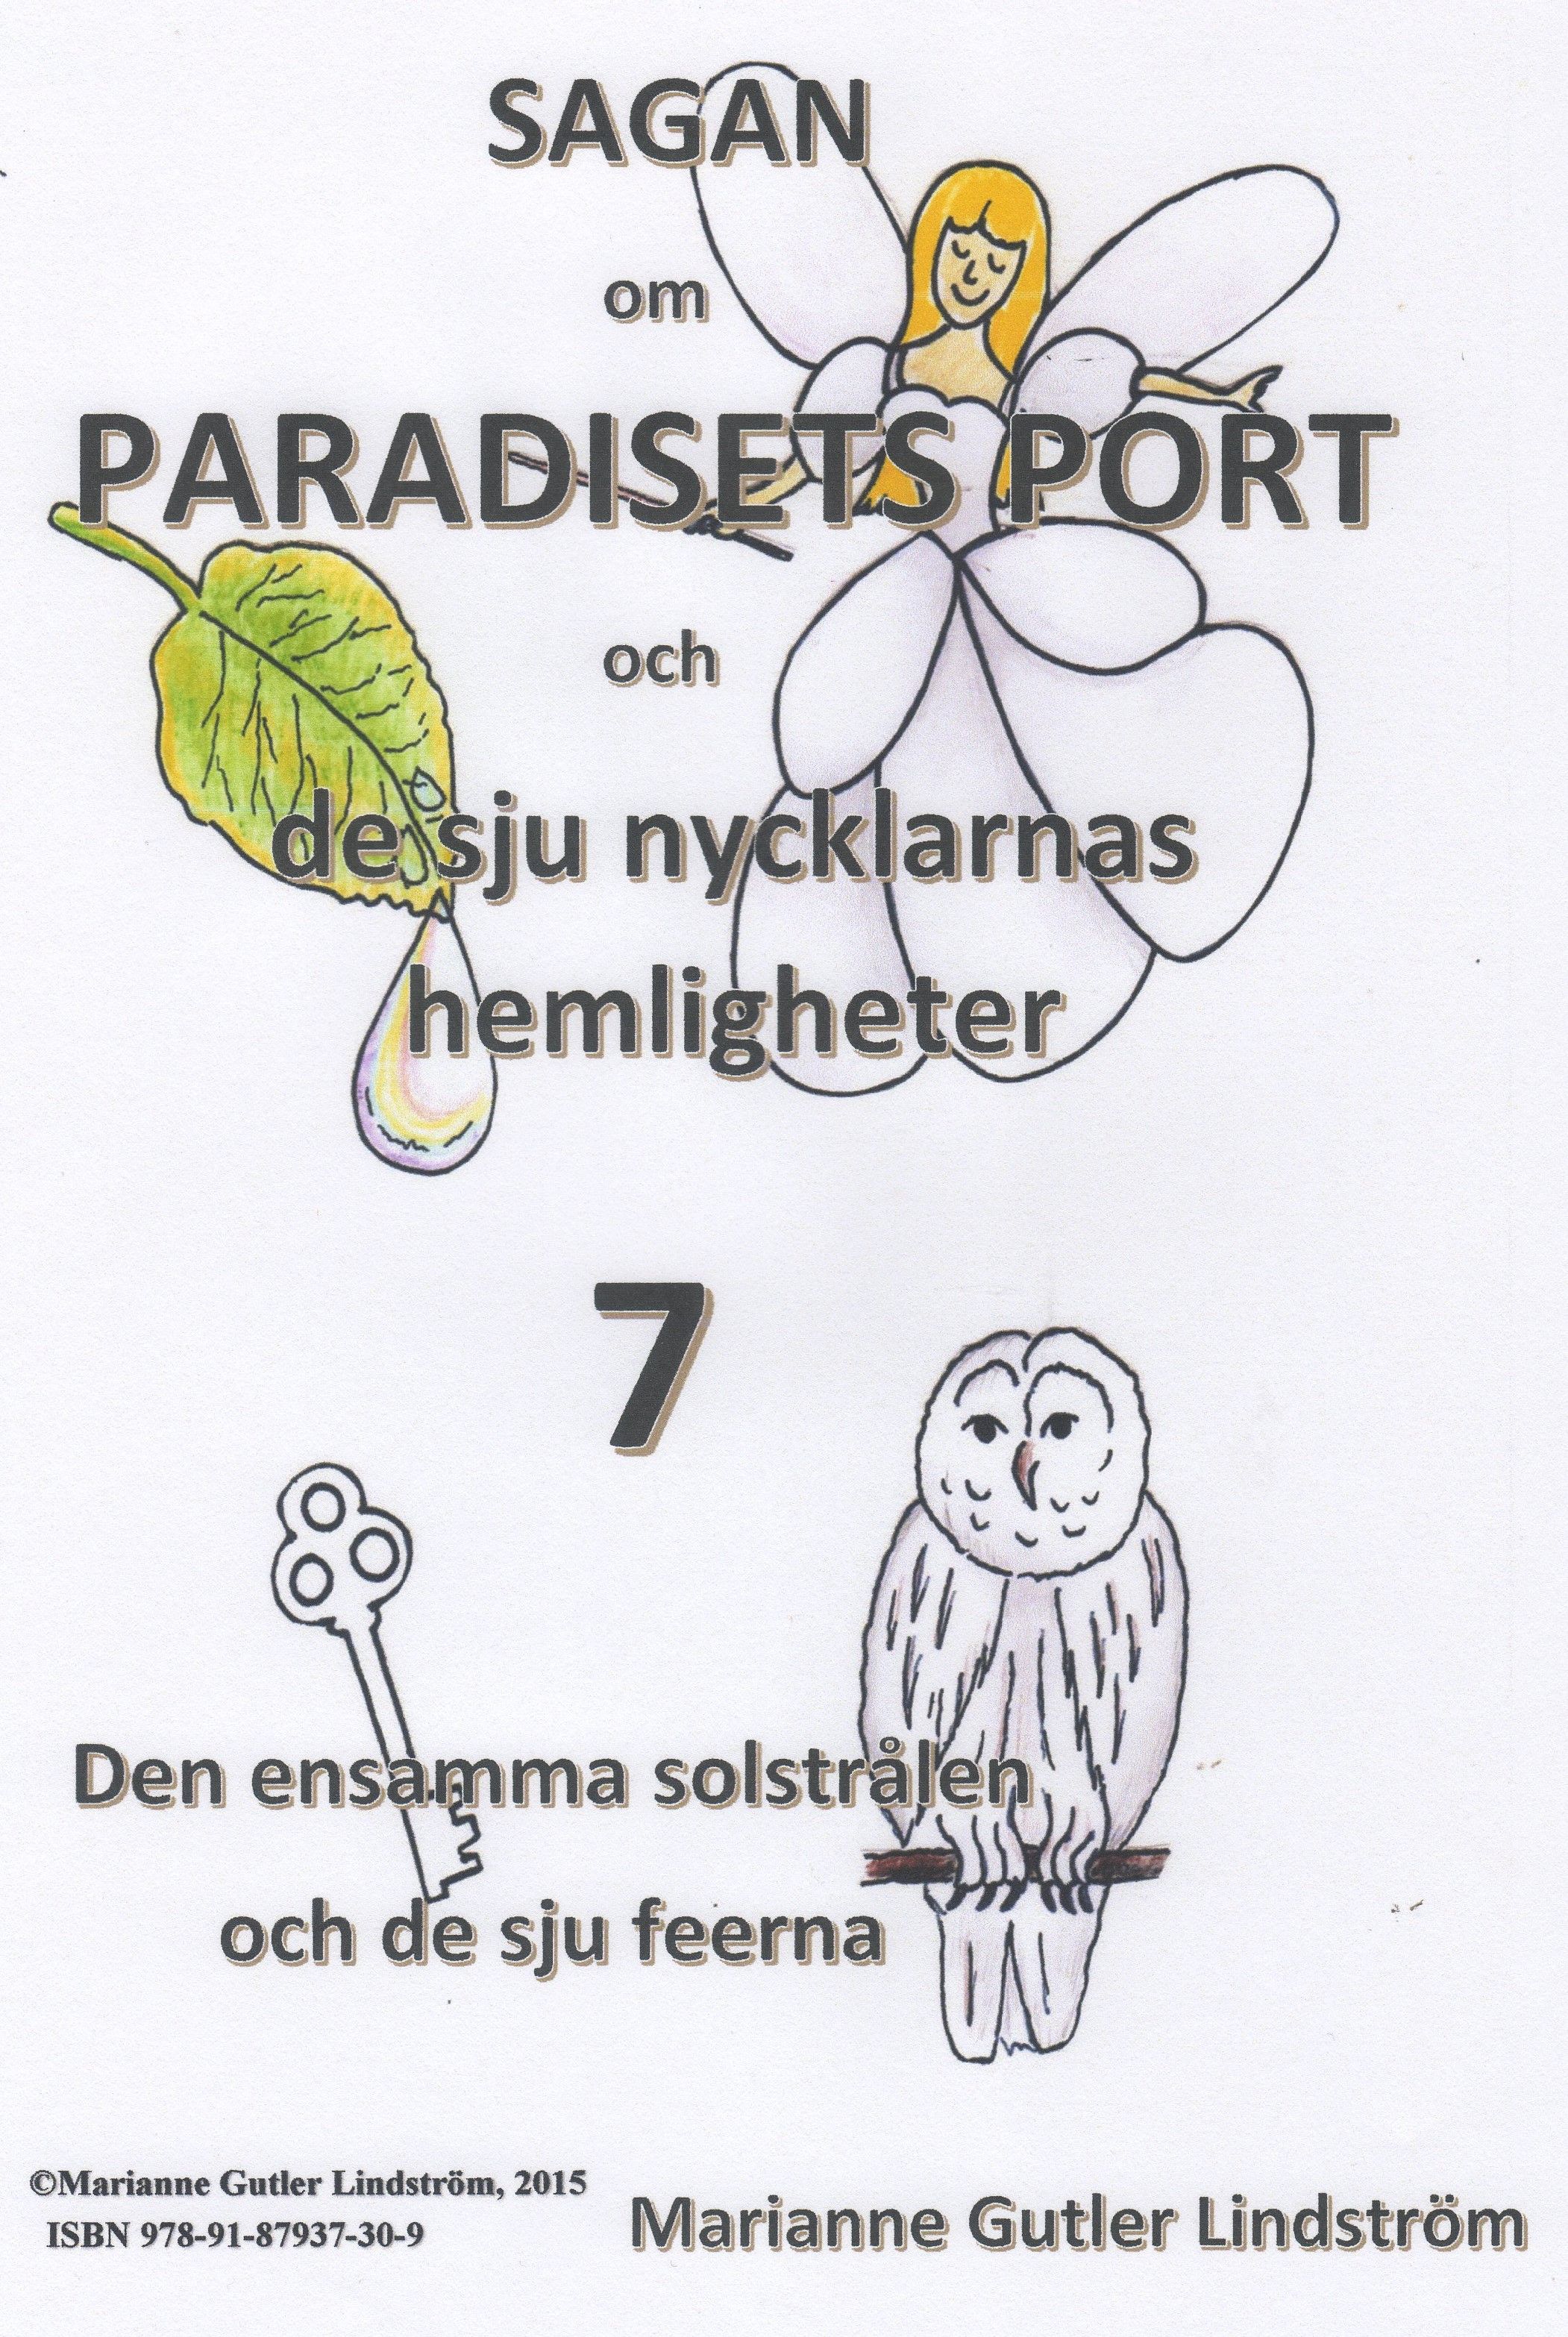 Sagan om Paradisets Port 7  Den ensamma solstrålen och de sju feerna, e-bog af Marianne Gutler Lindström